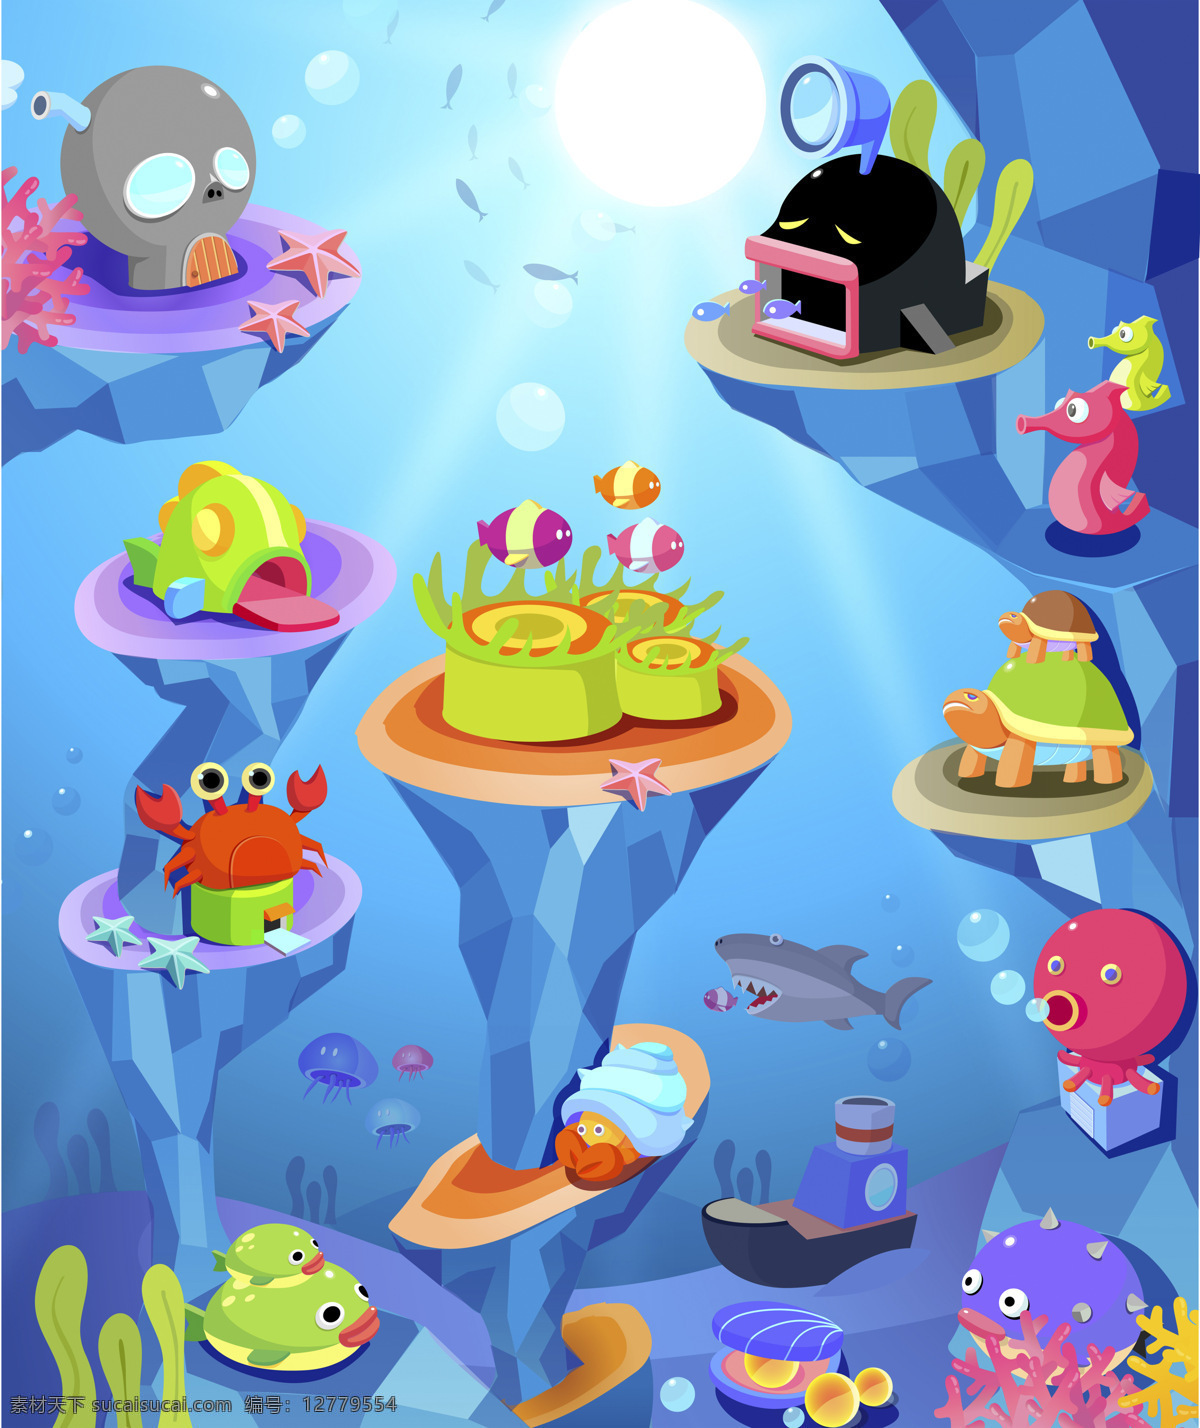 卡通 海底 世界 卡通画 插画 可爱 儿童画 海底世界 鱼类 海藻 漫画插画 文化艺术